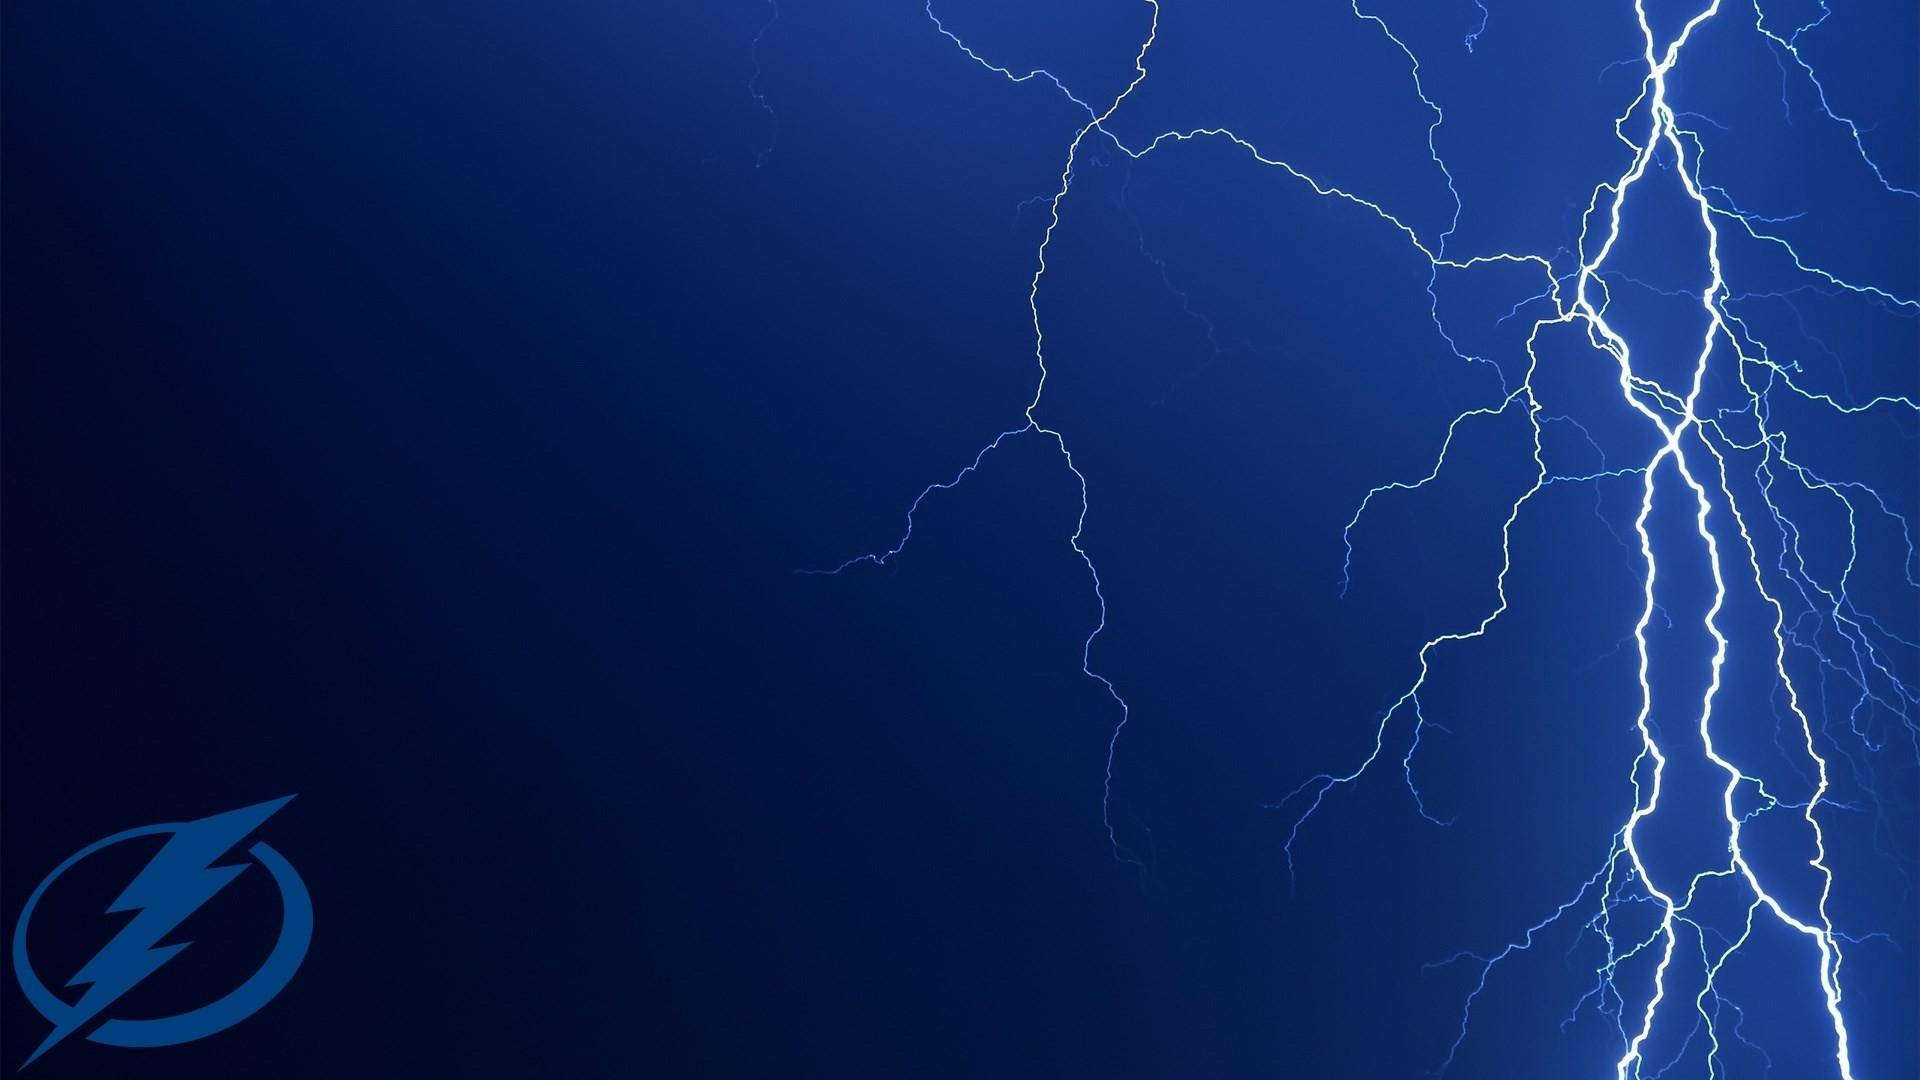 Tampa Bay Lightning Striking Blue Wallpaper